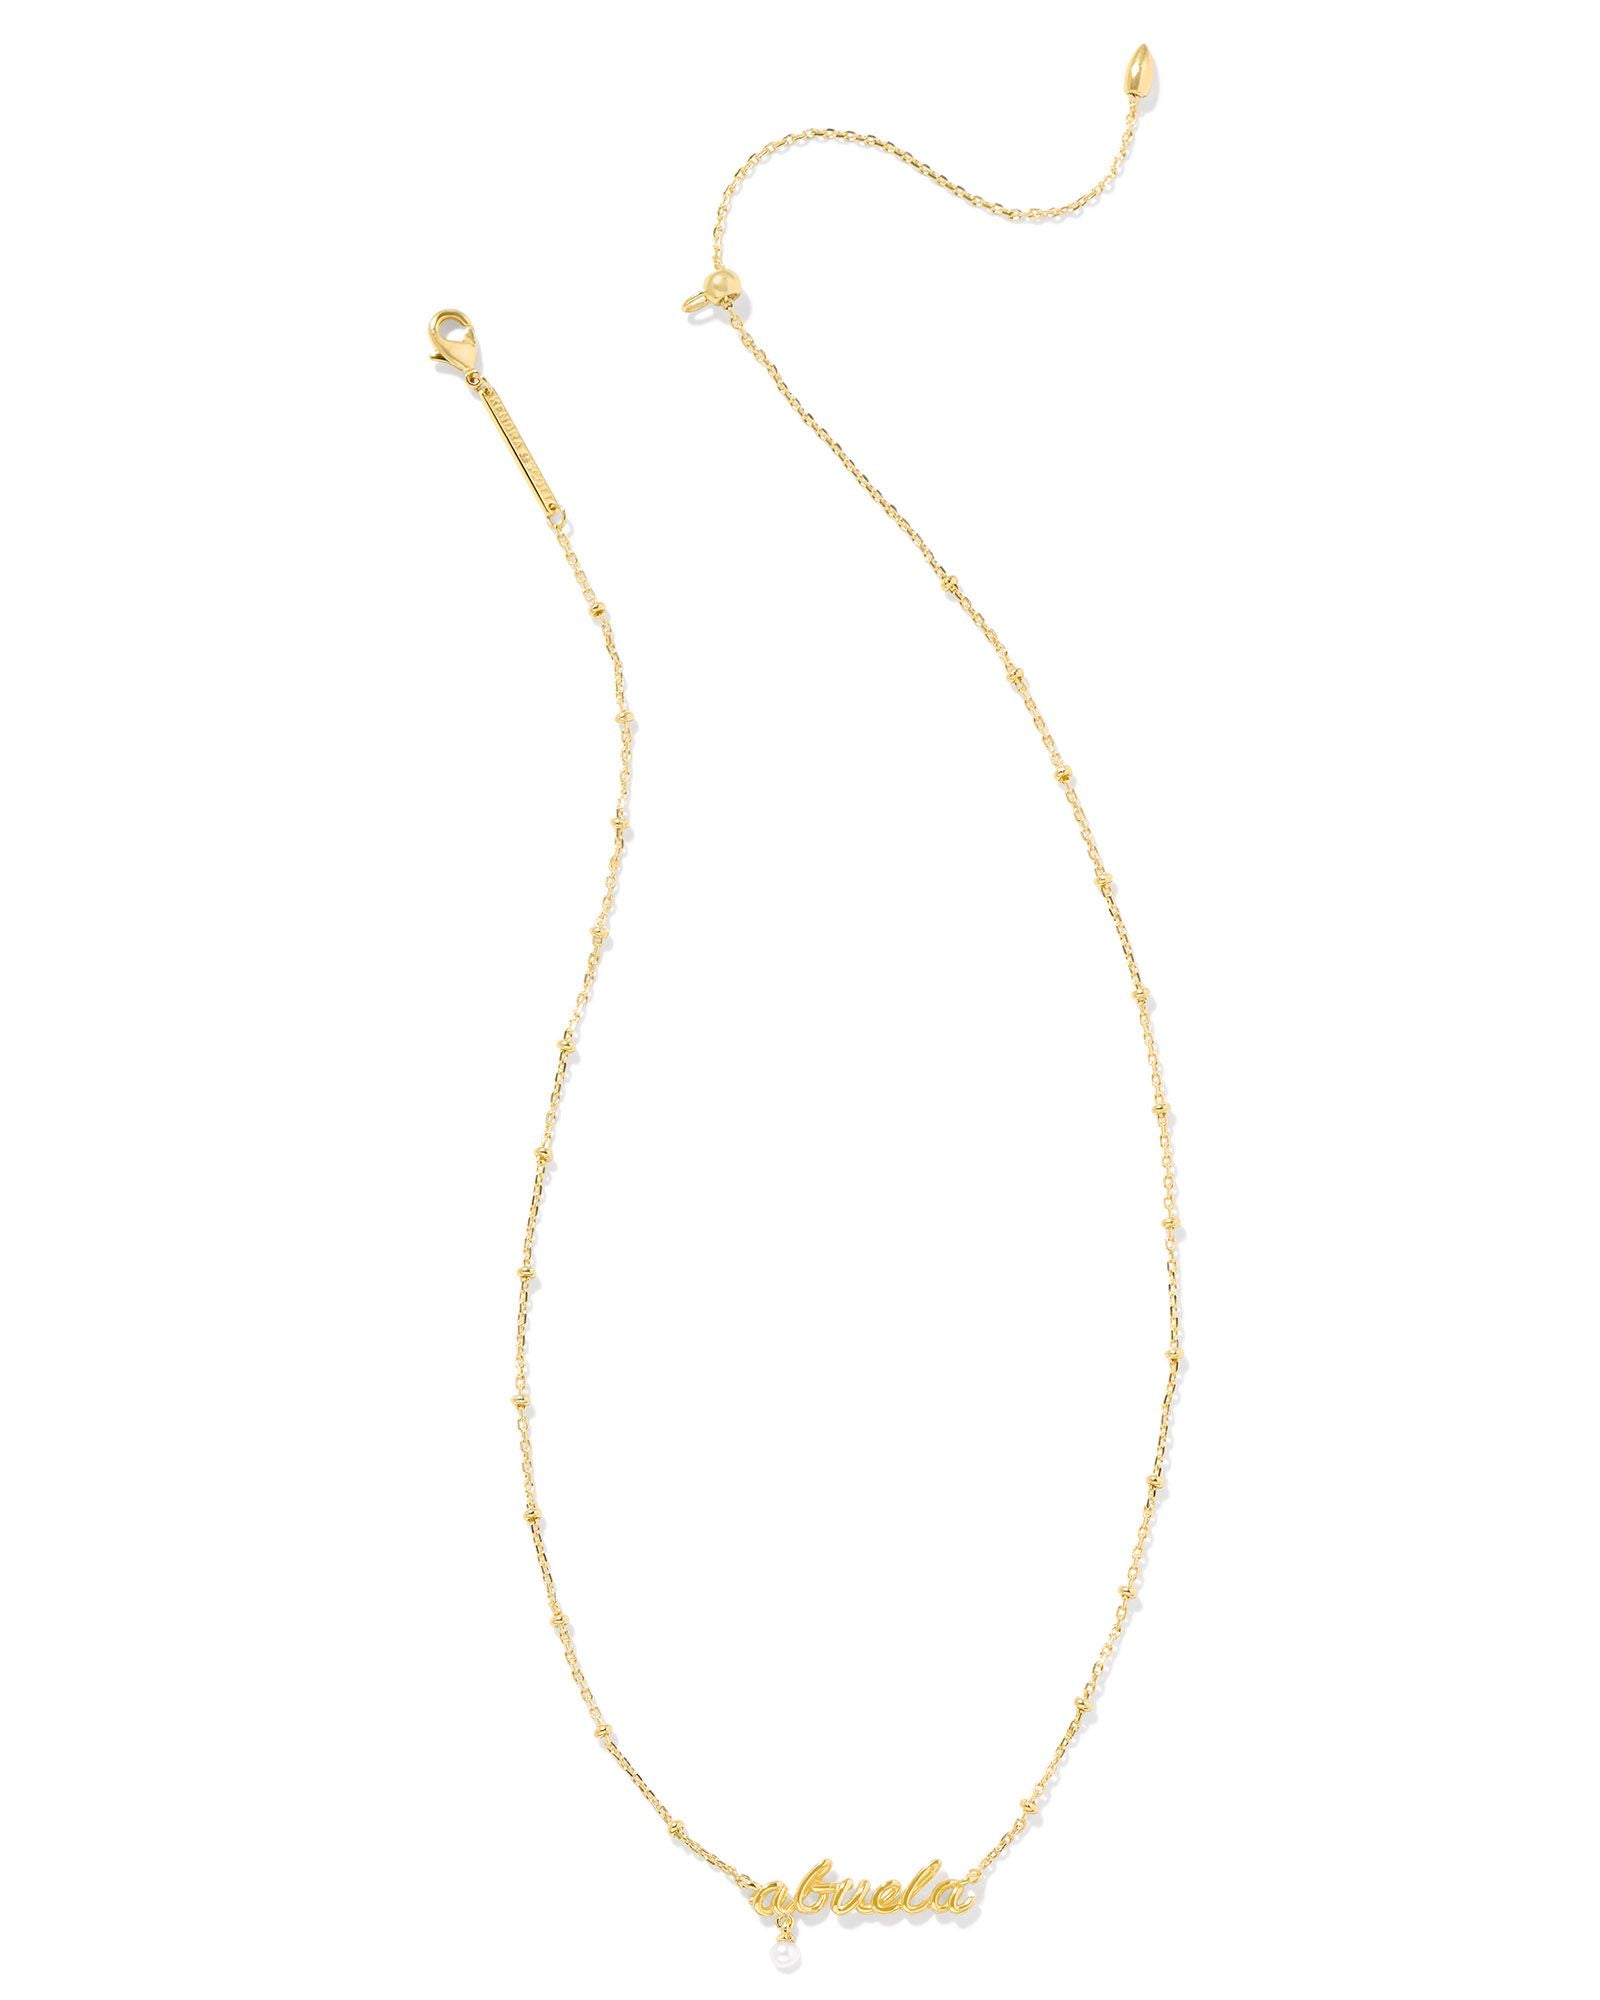 Abuela Script Pendant Necklace Gold w/White Pearl